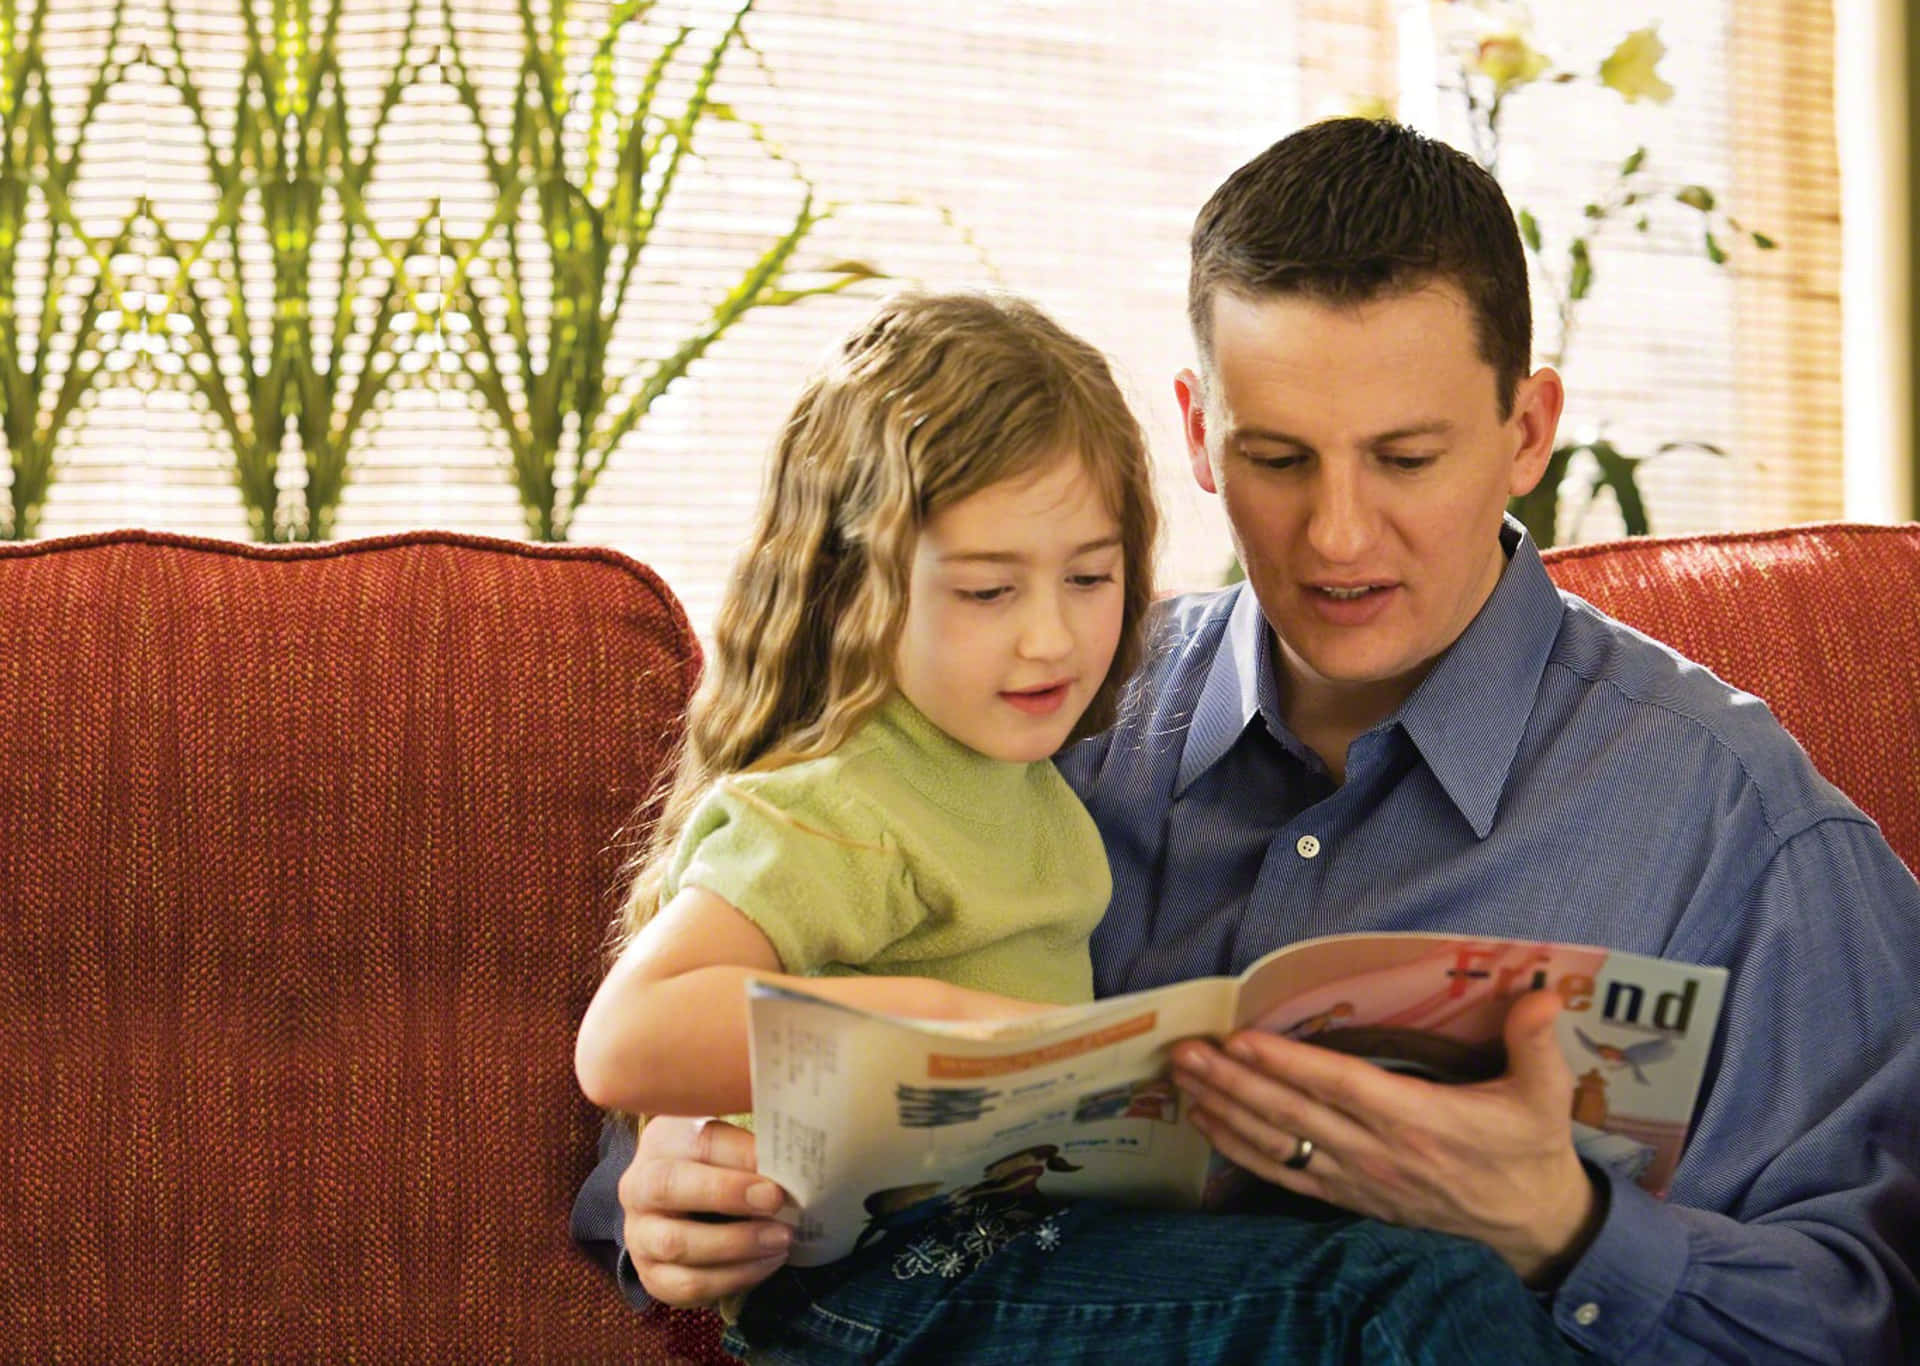 Fader og datter læser magasinbillede